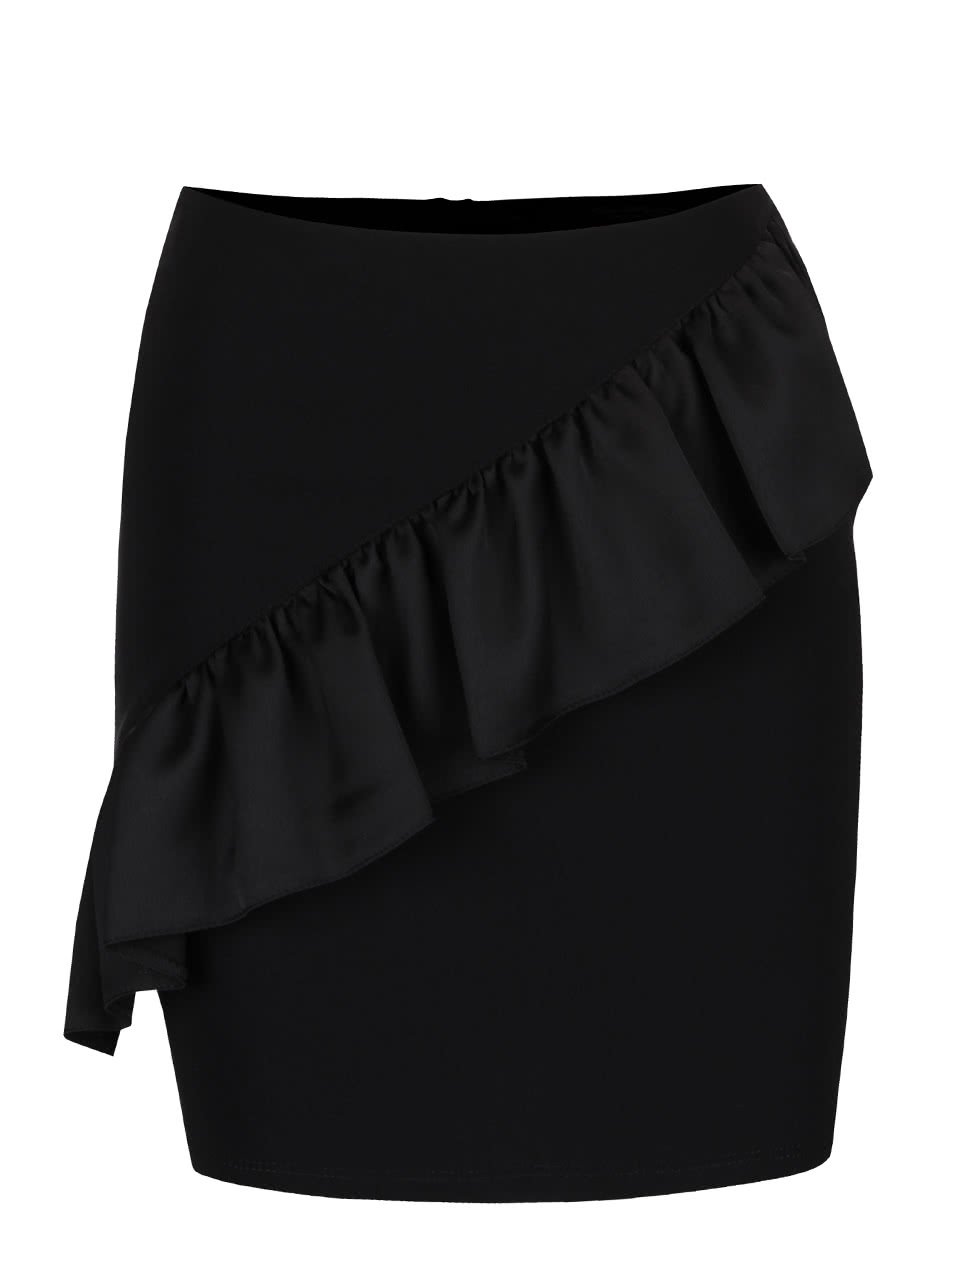 Černá krátká sukně s volánem Miss Selfridge